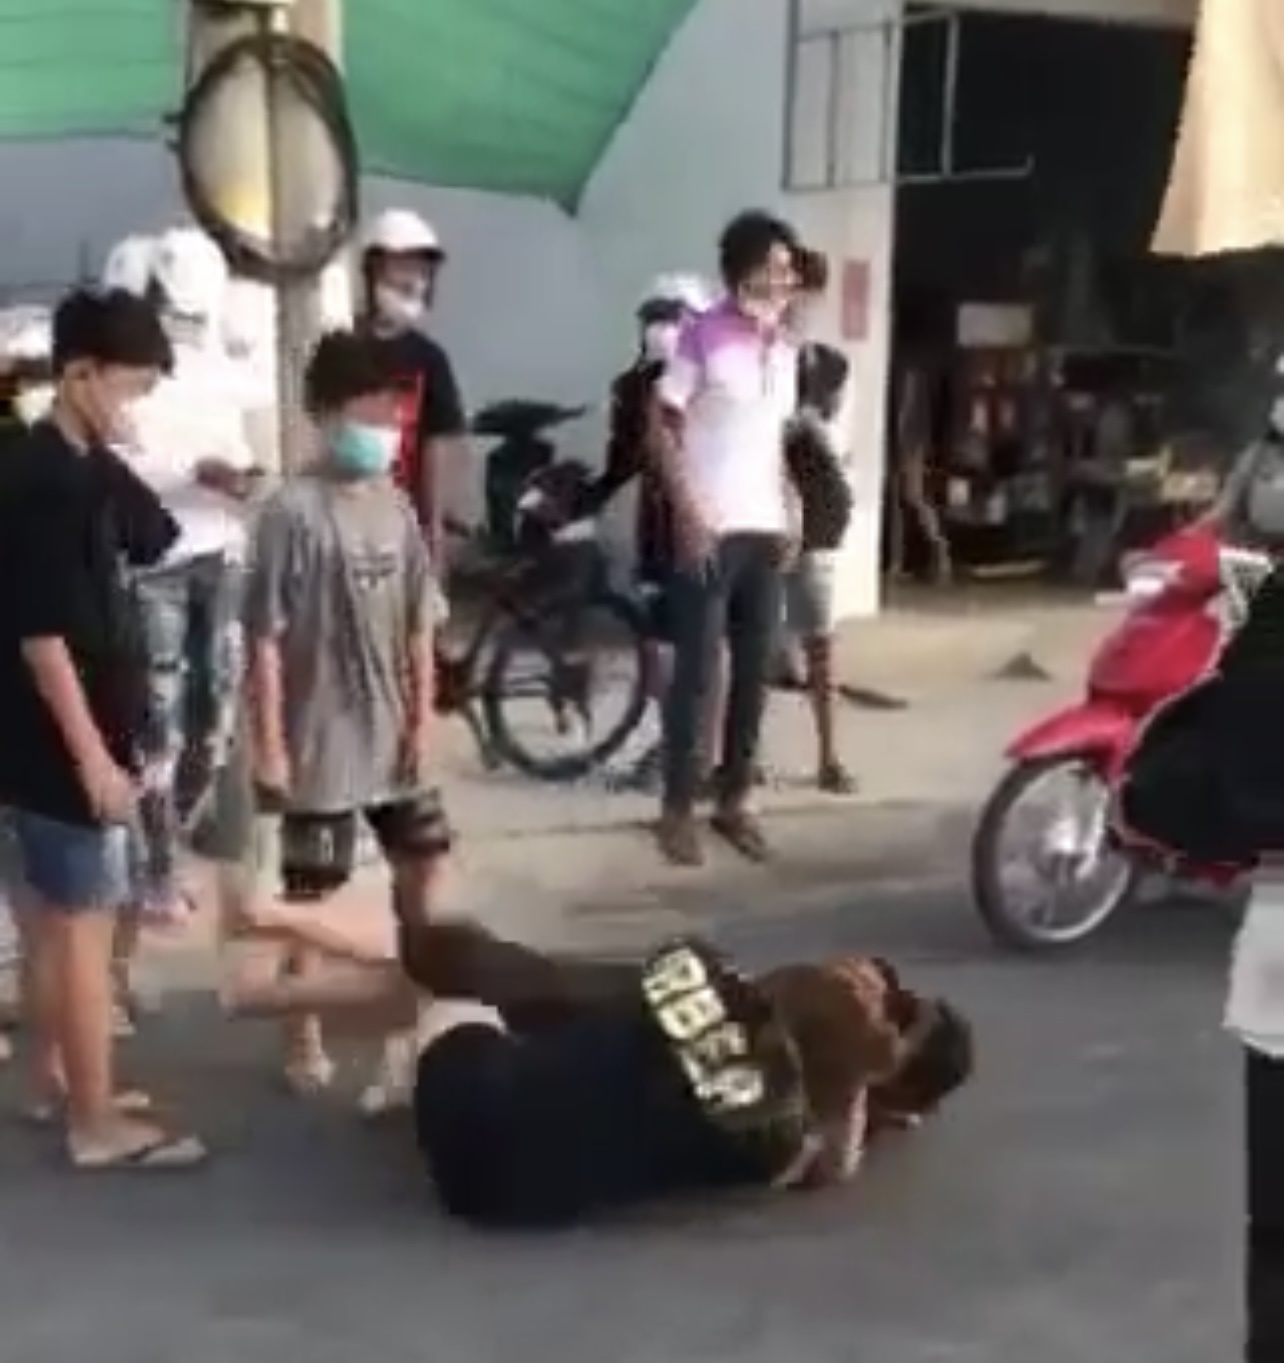 Lại xuất hiện clip 2 thiếu nữ đánh nhau dữ dội giữa đường